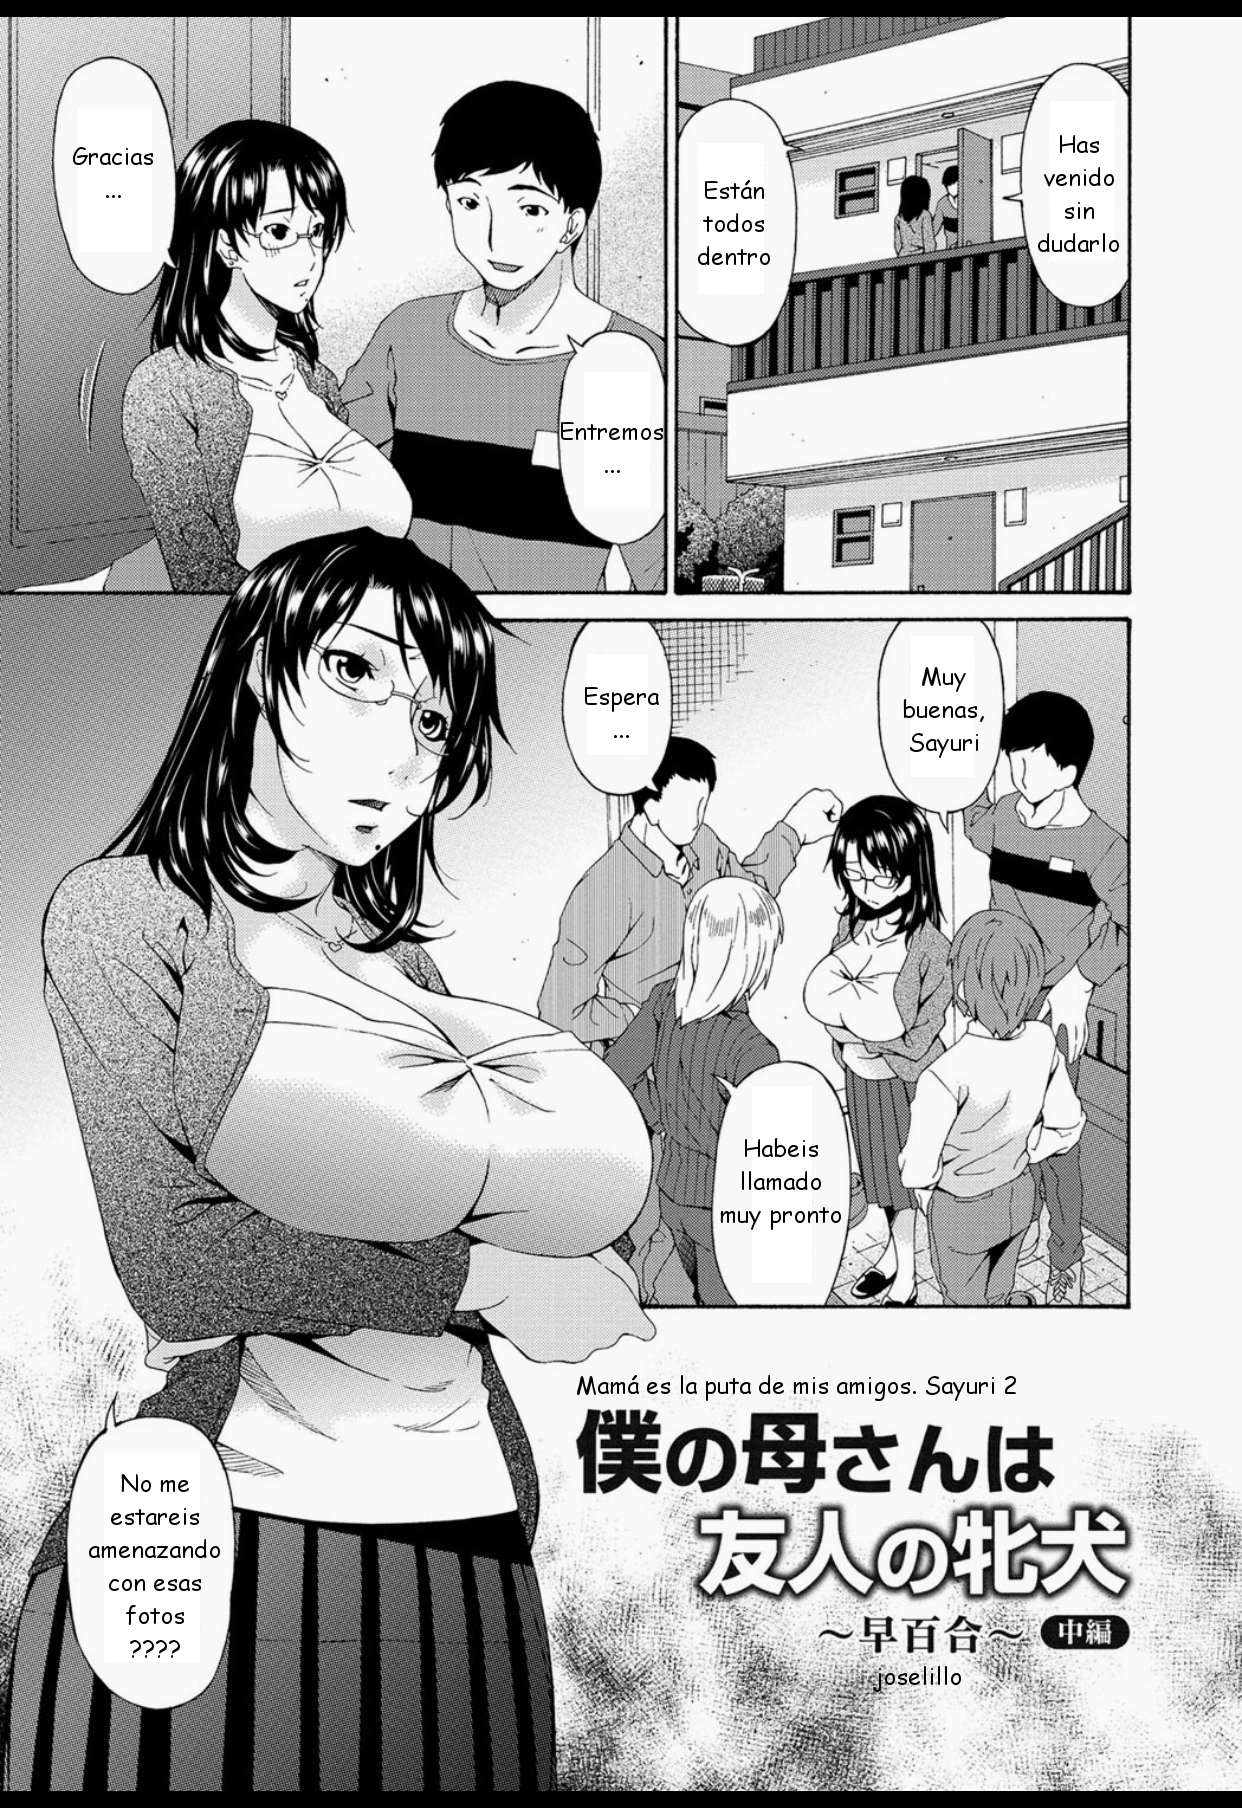 Mamá es la Puta de mis Amigos:Sayuri 2 Chapter-4 - 0